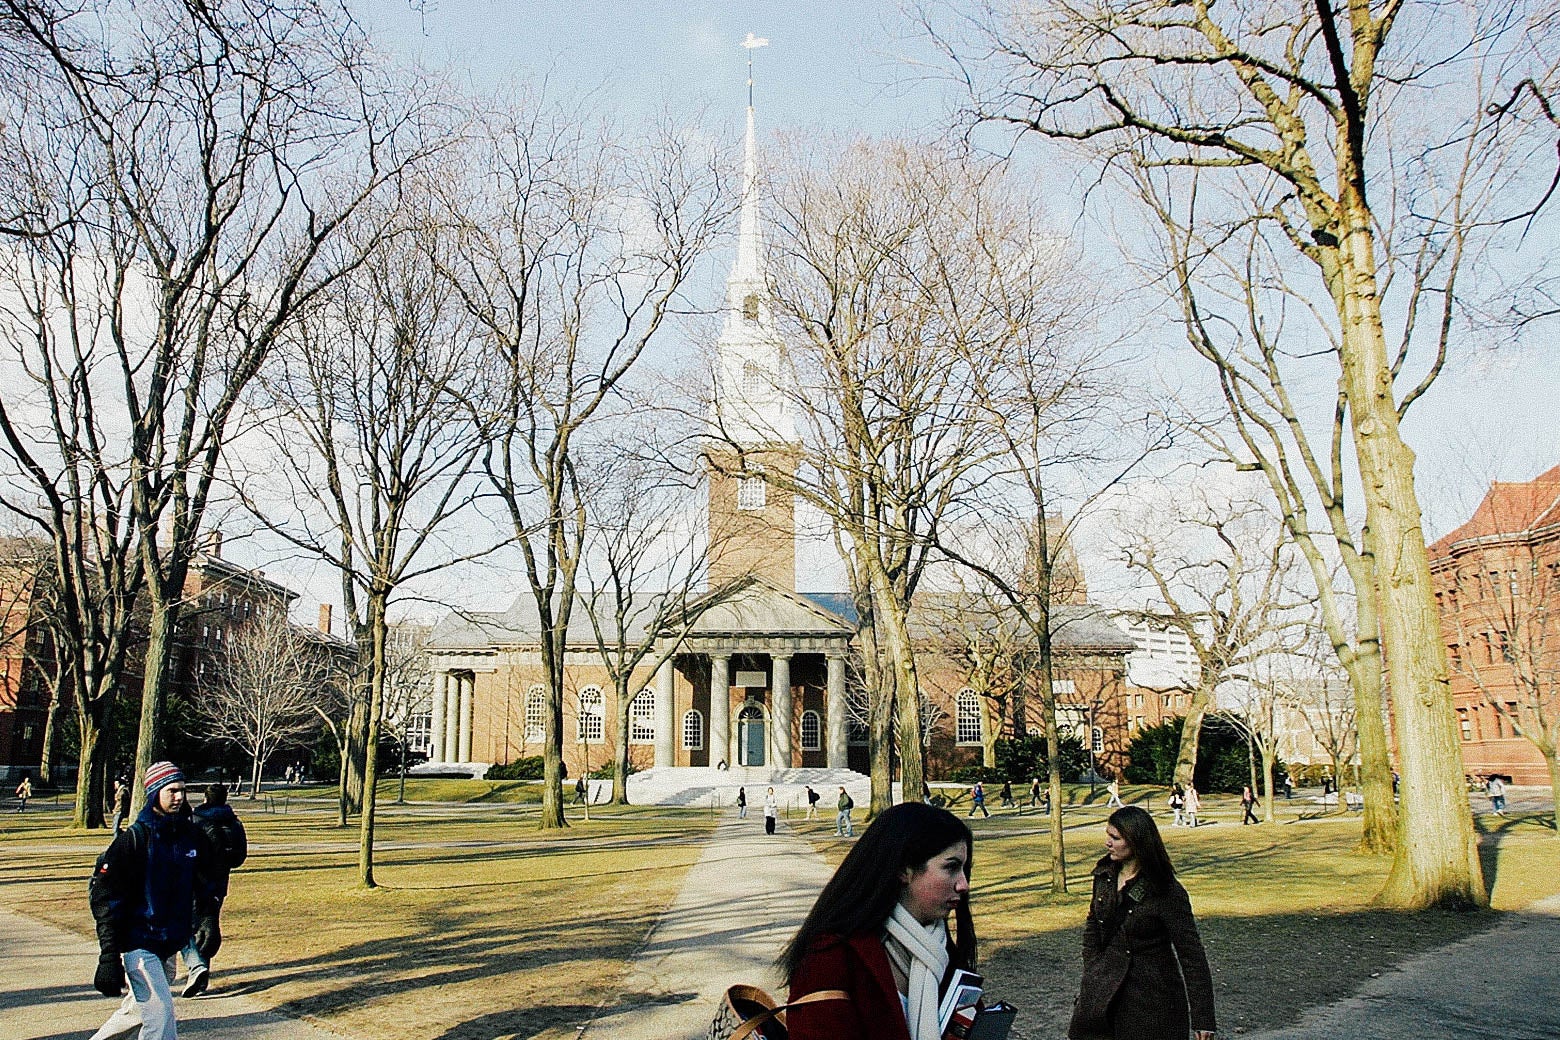 Still of Harvard University in Cambridge, Massachusetts, as seen in 2006.